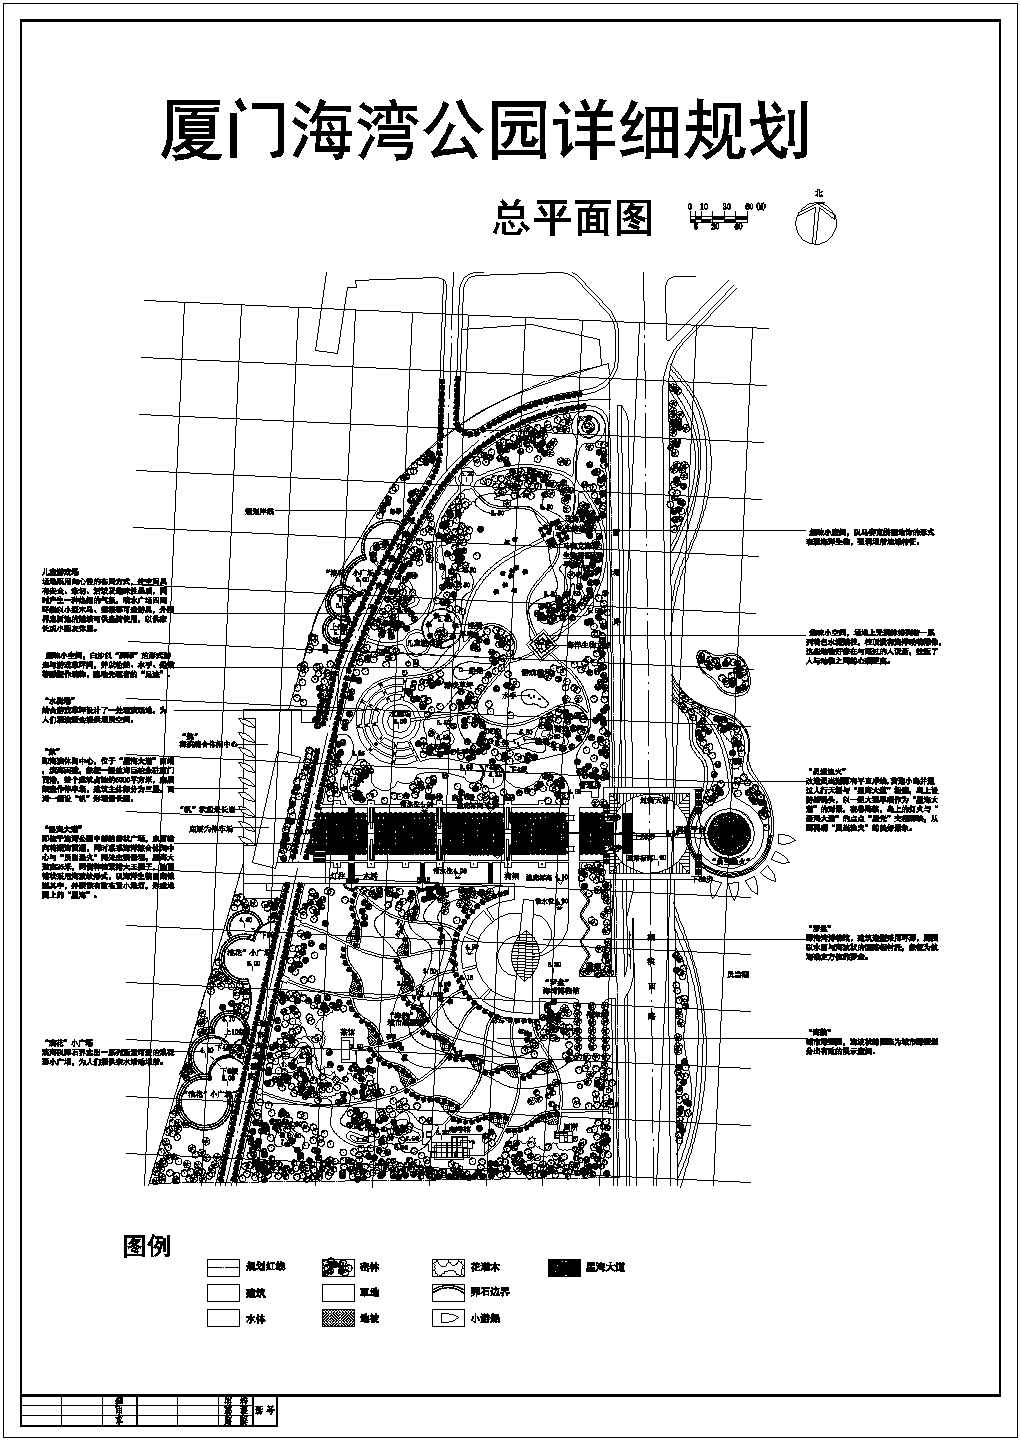 【厦门市】海洋公园设计规划平面图